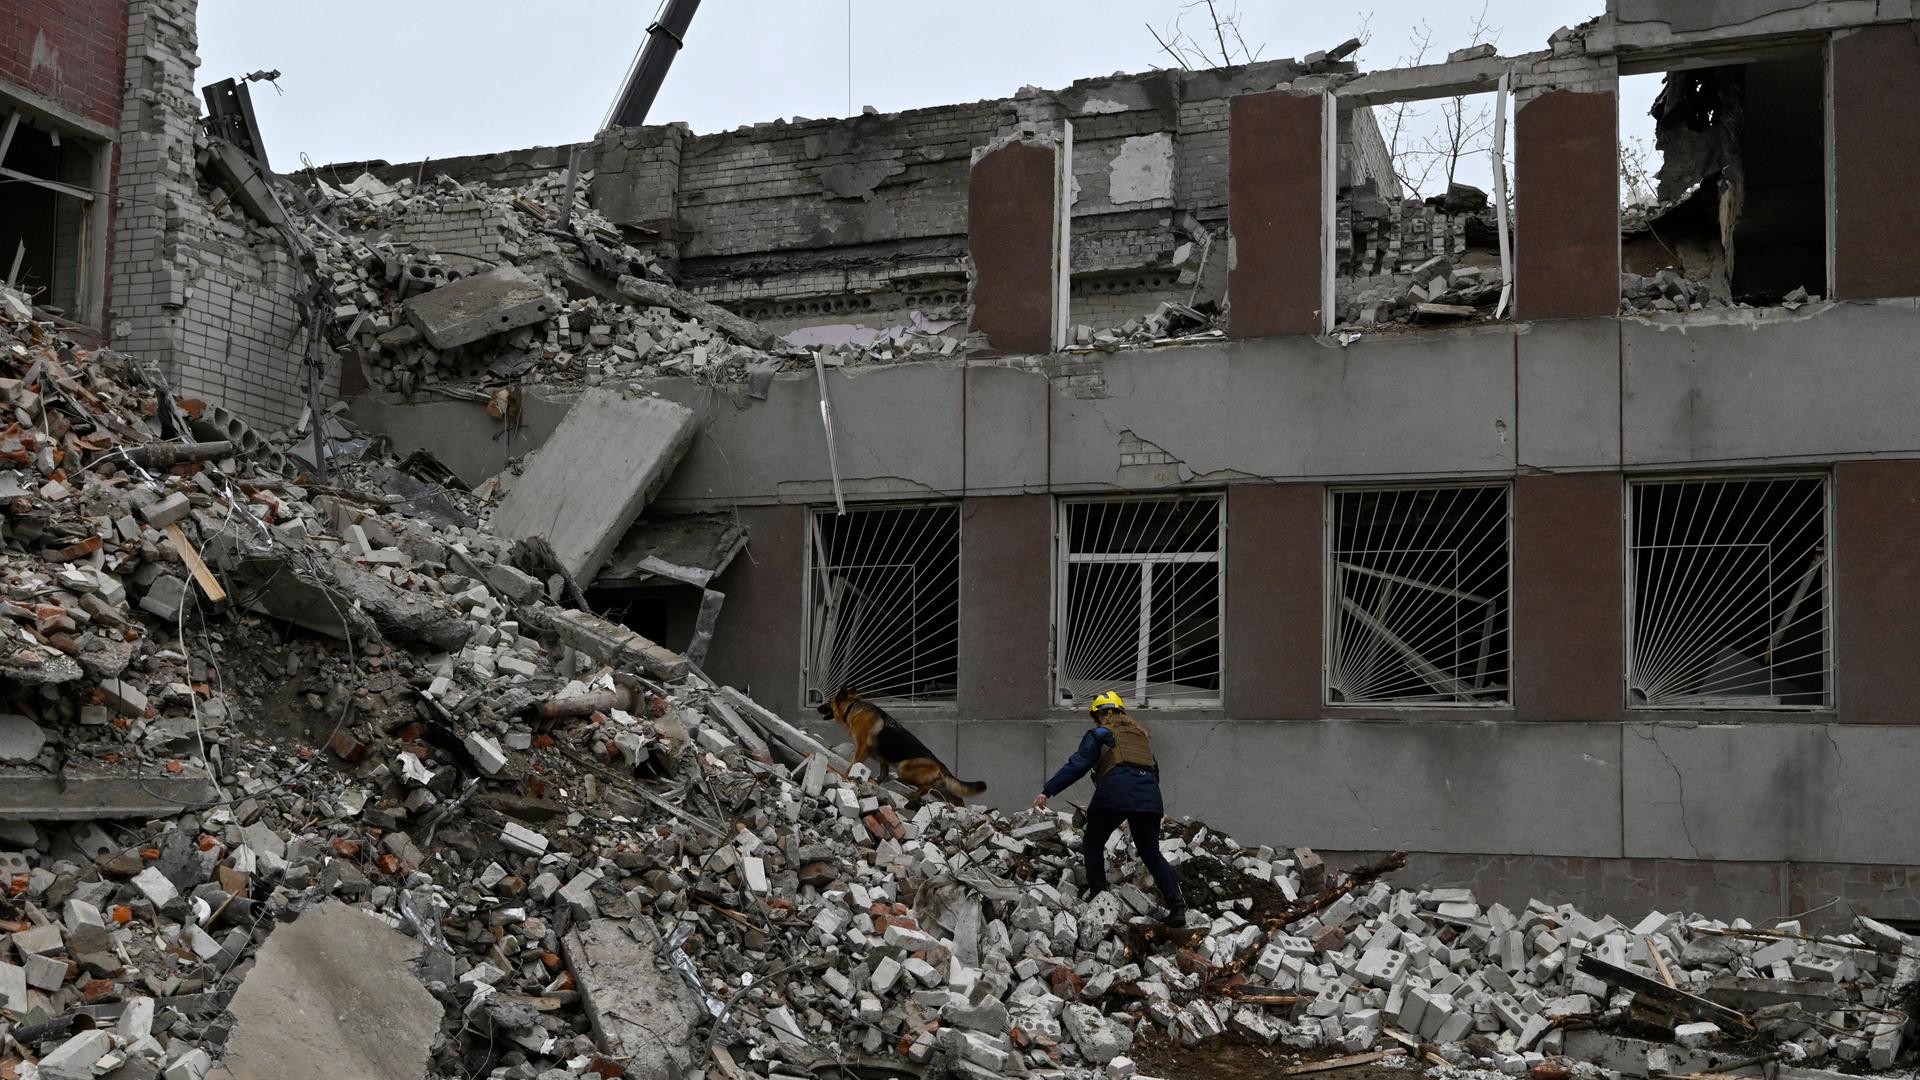 Ein Mann in Schutzkleidung steht mit einem Spürhund auf dem Trümmerberg eines nach Raketenbeschuss komplett zerstörten Gebäudes.